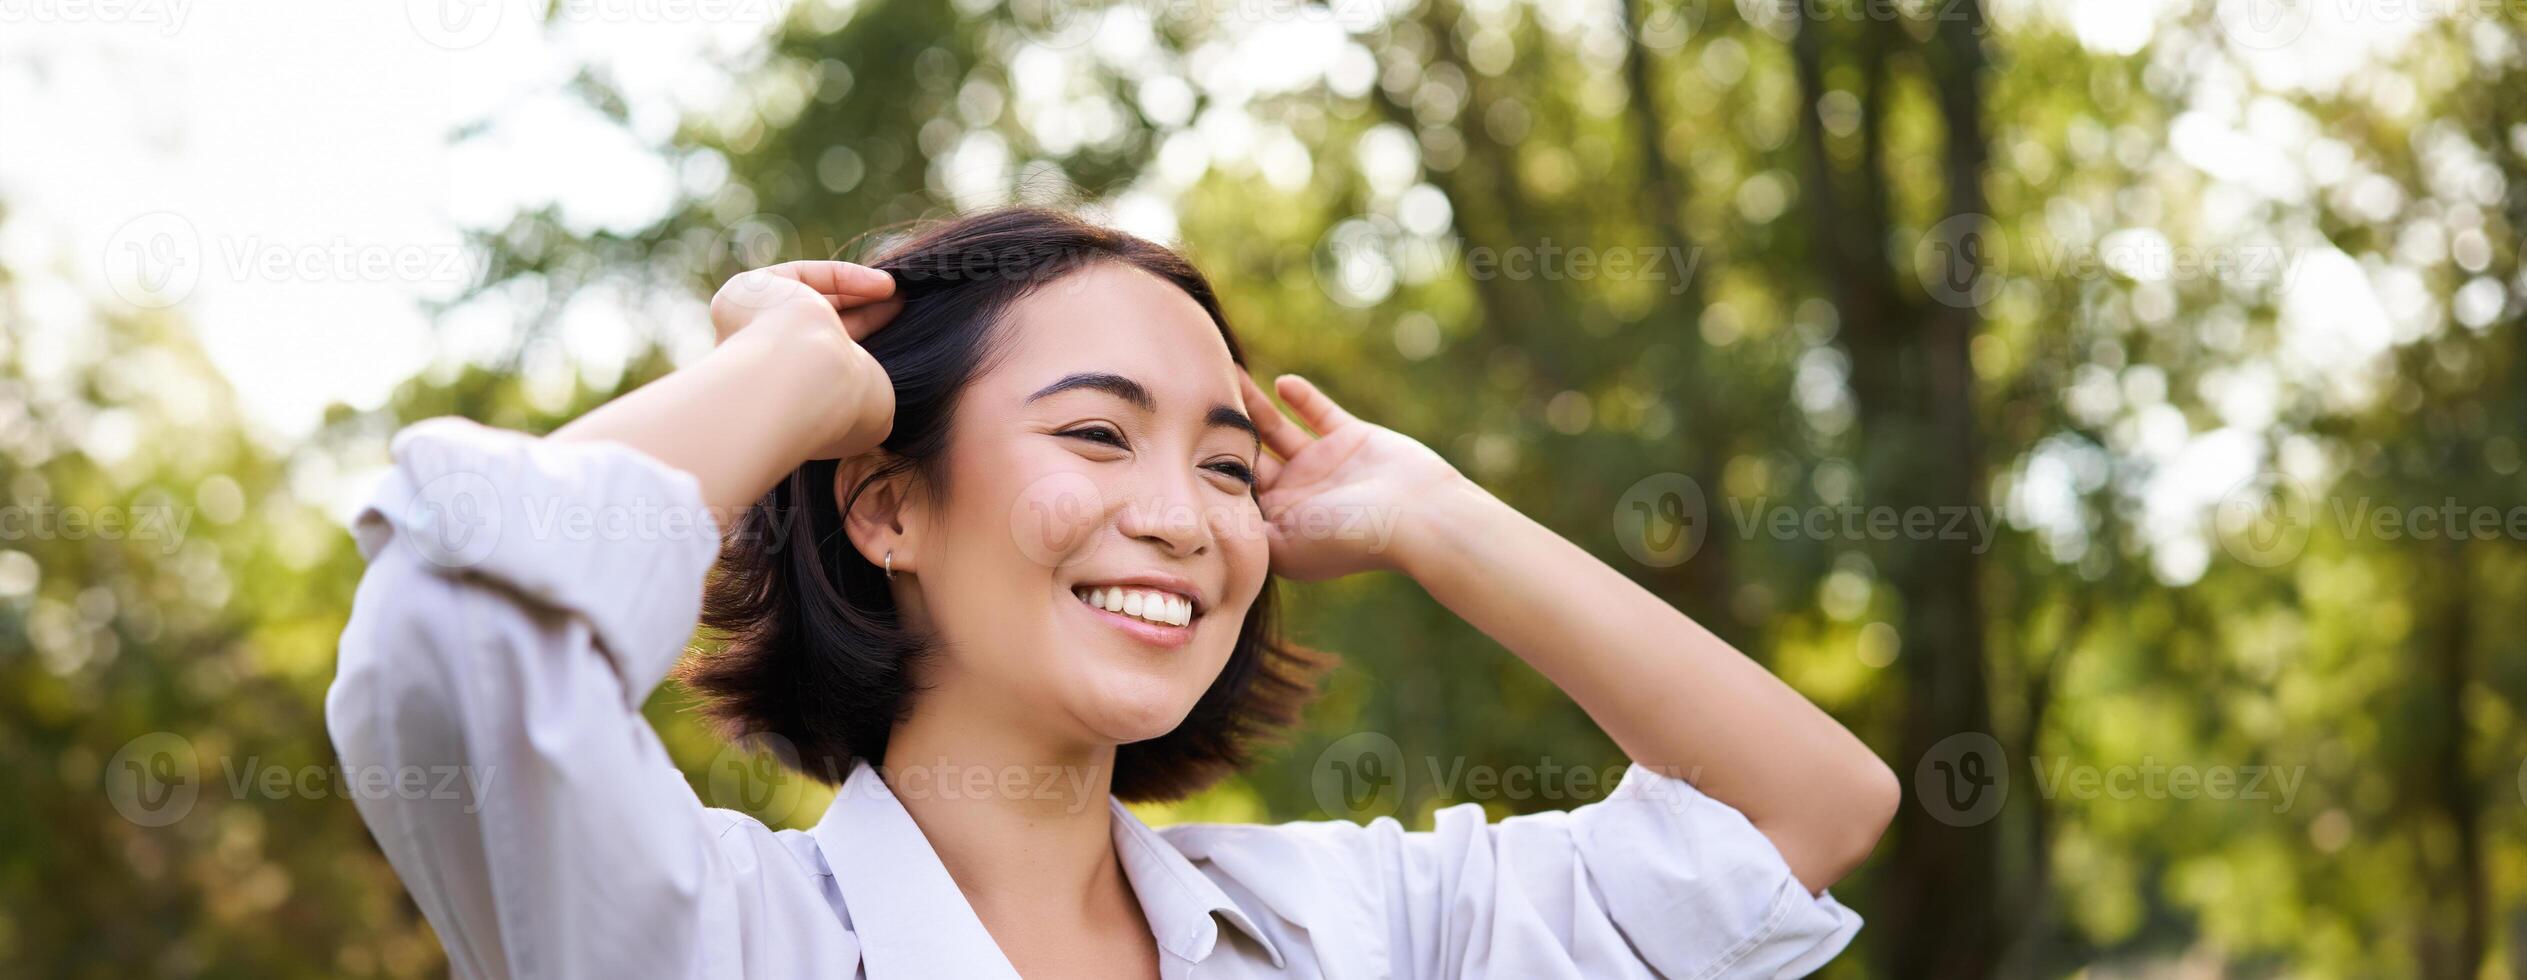 genuino le persone. ritratto di asiatico donna ridendo e sorridente, a piedi nel parco, sensazione gioia e positività foto